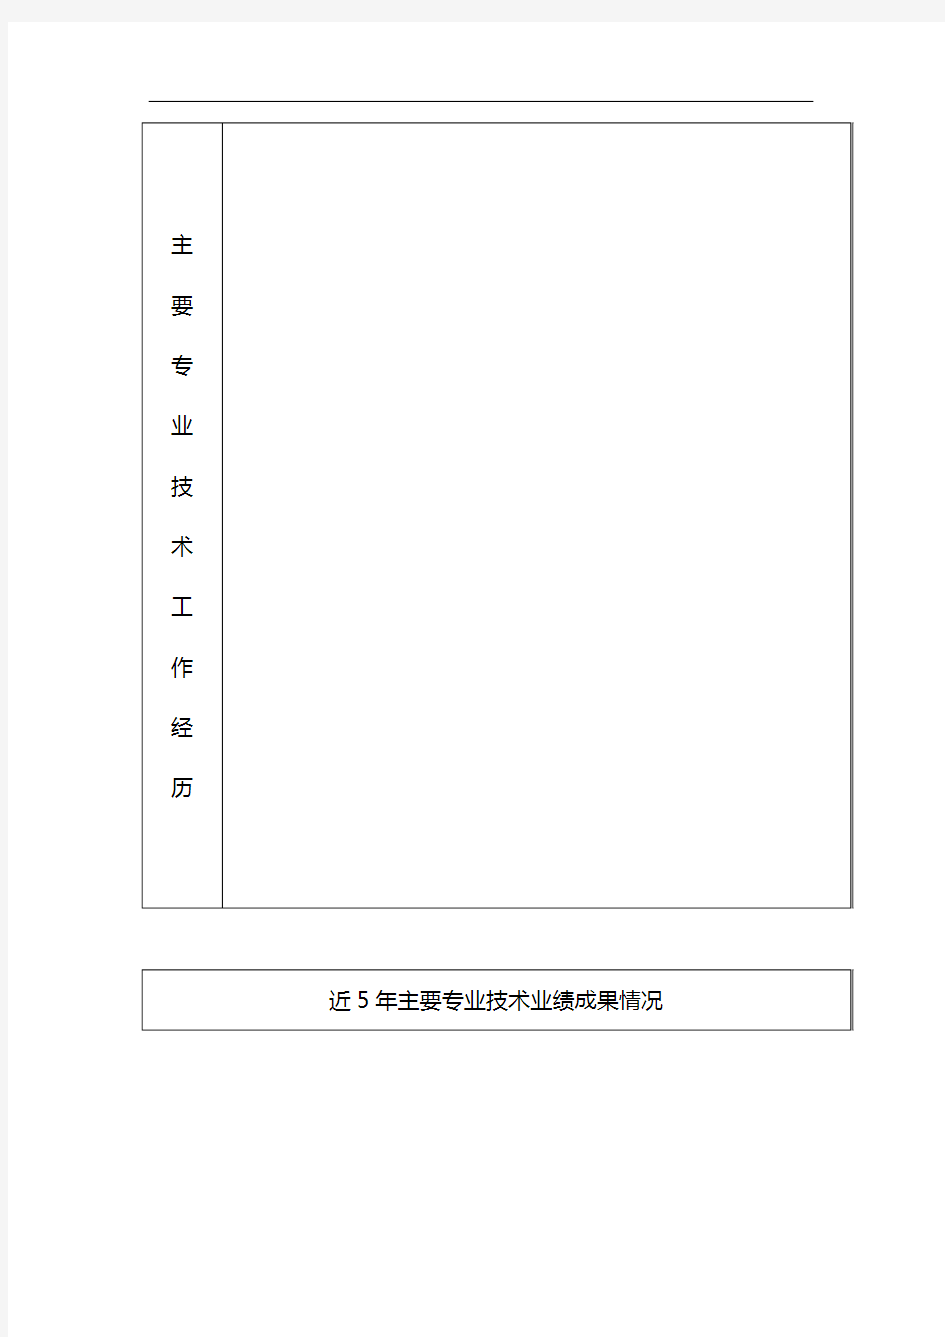 广东省高等学校教师高级专业技术资格评审委员会评委库入库人员推荐表 (1)